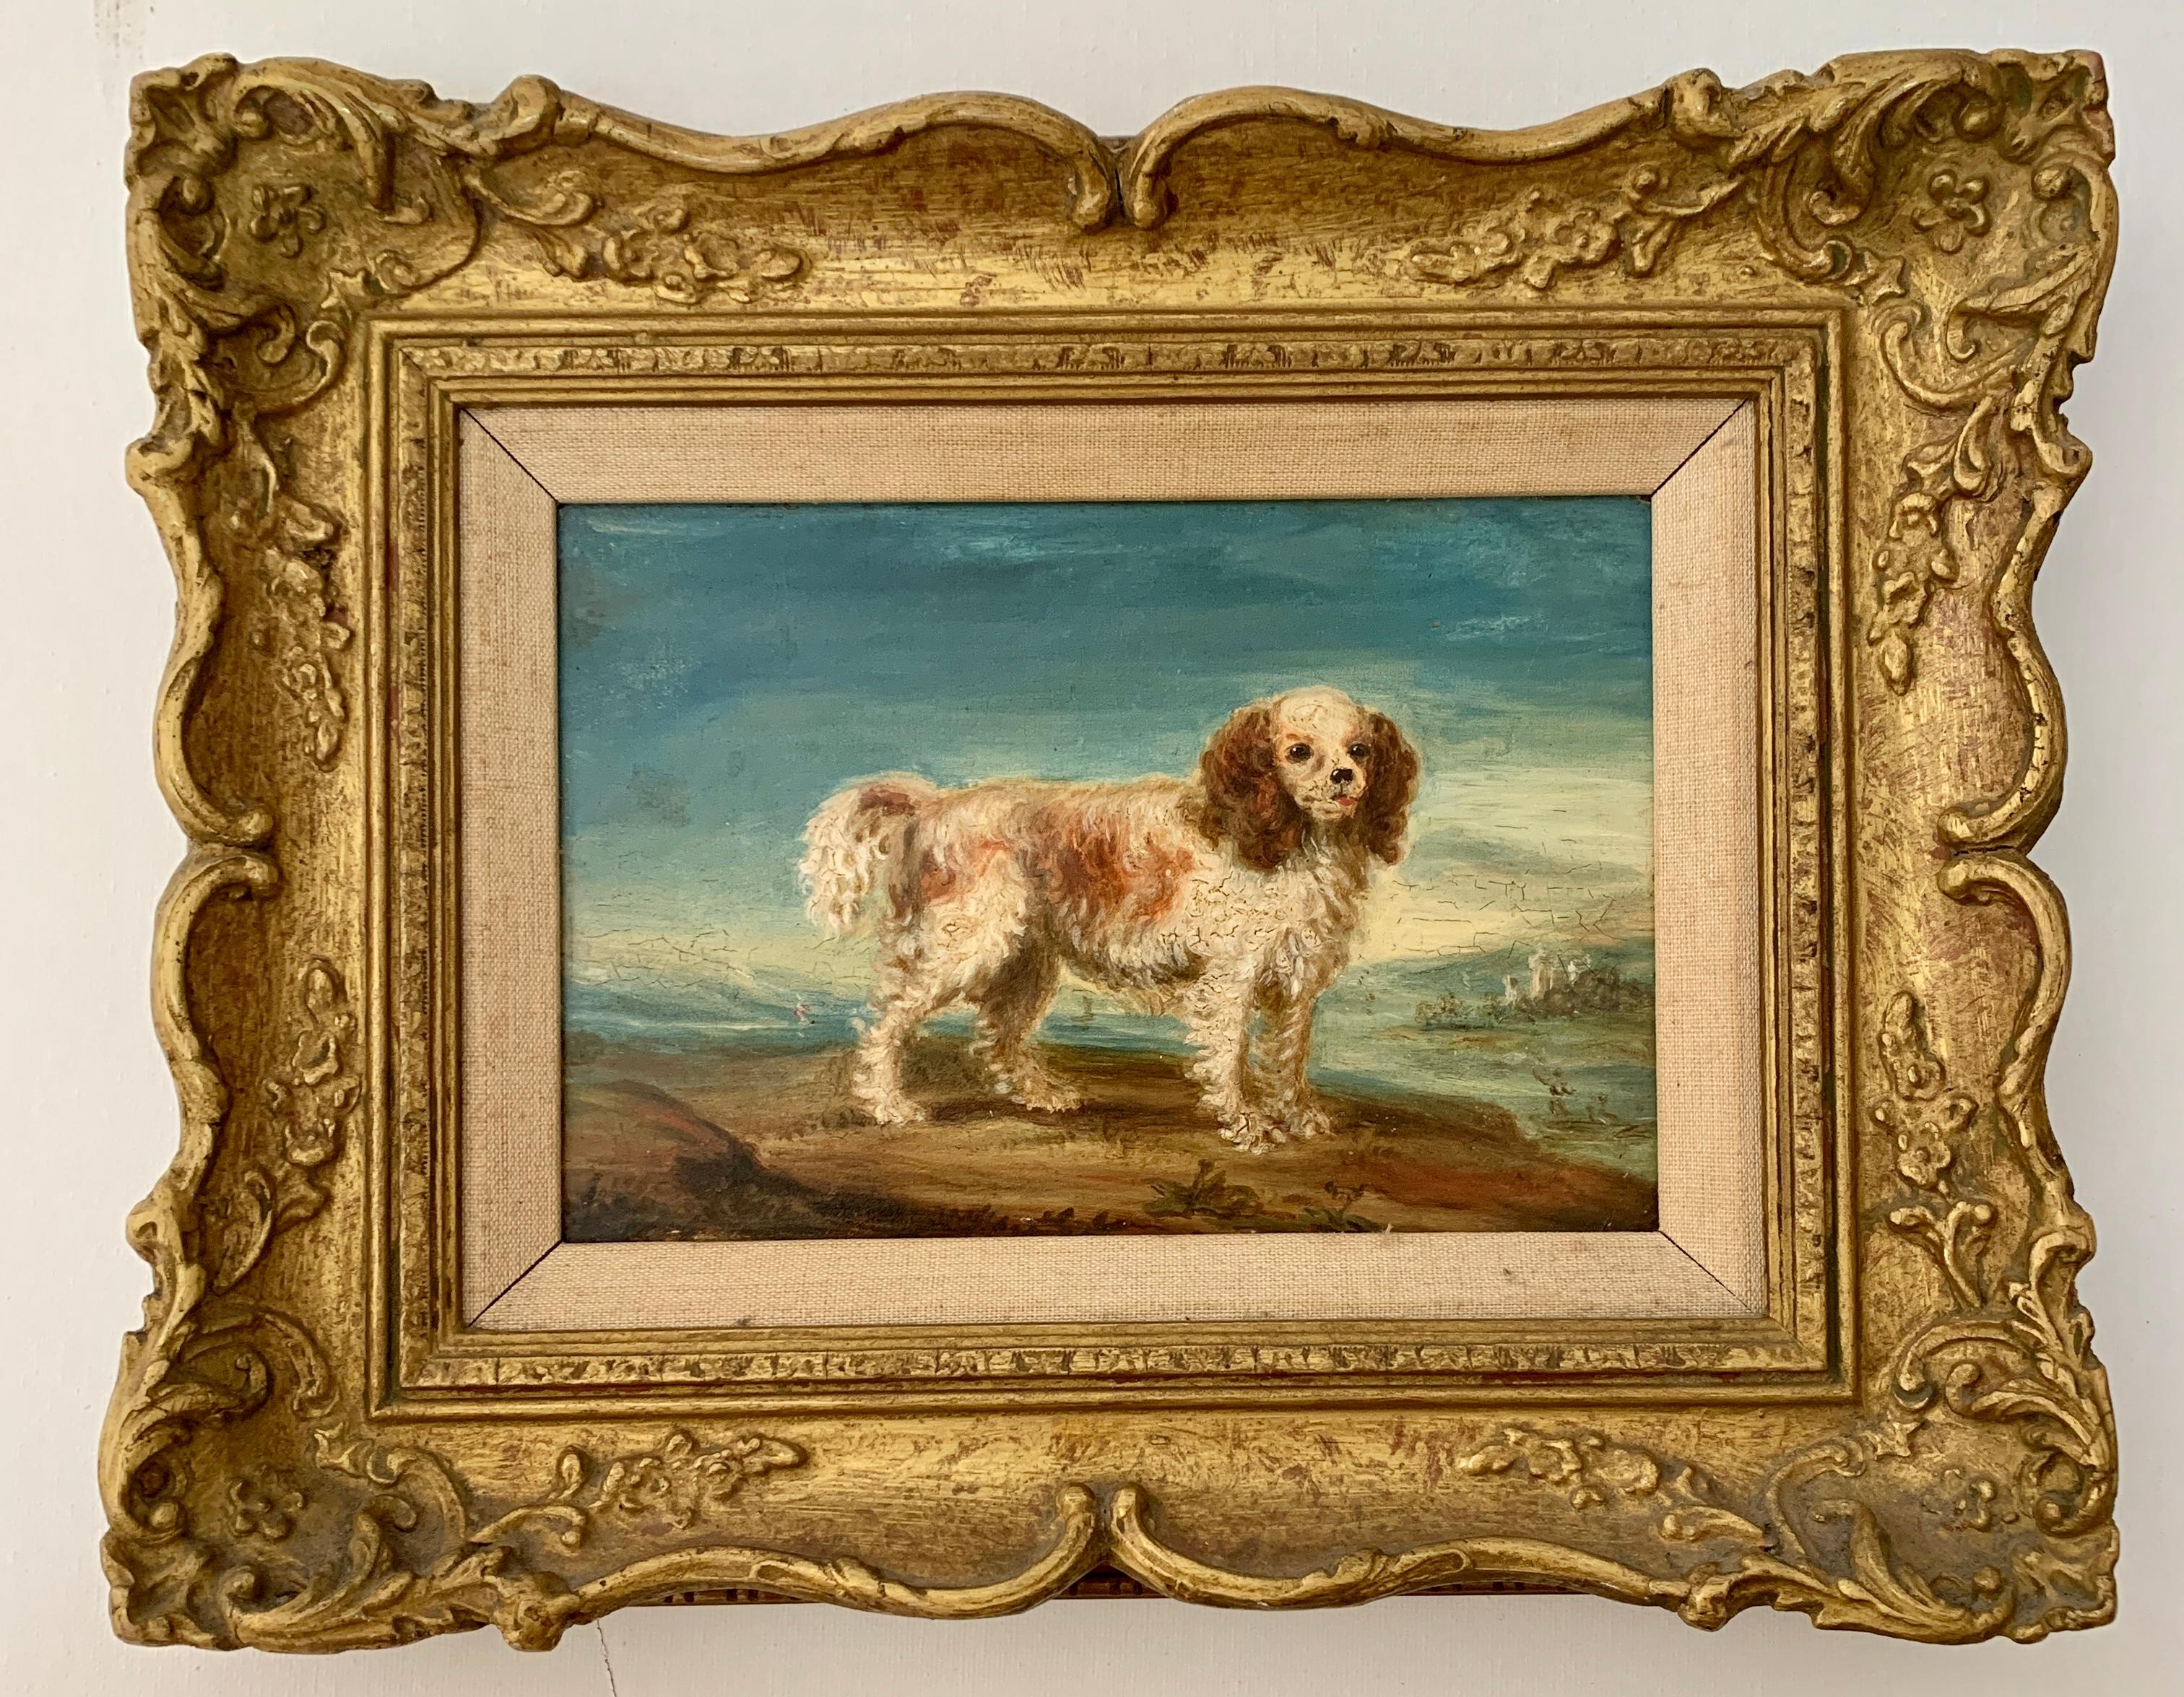 English 19th century folk art portrait of an English spaniel dog in a landscape